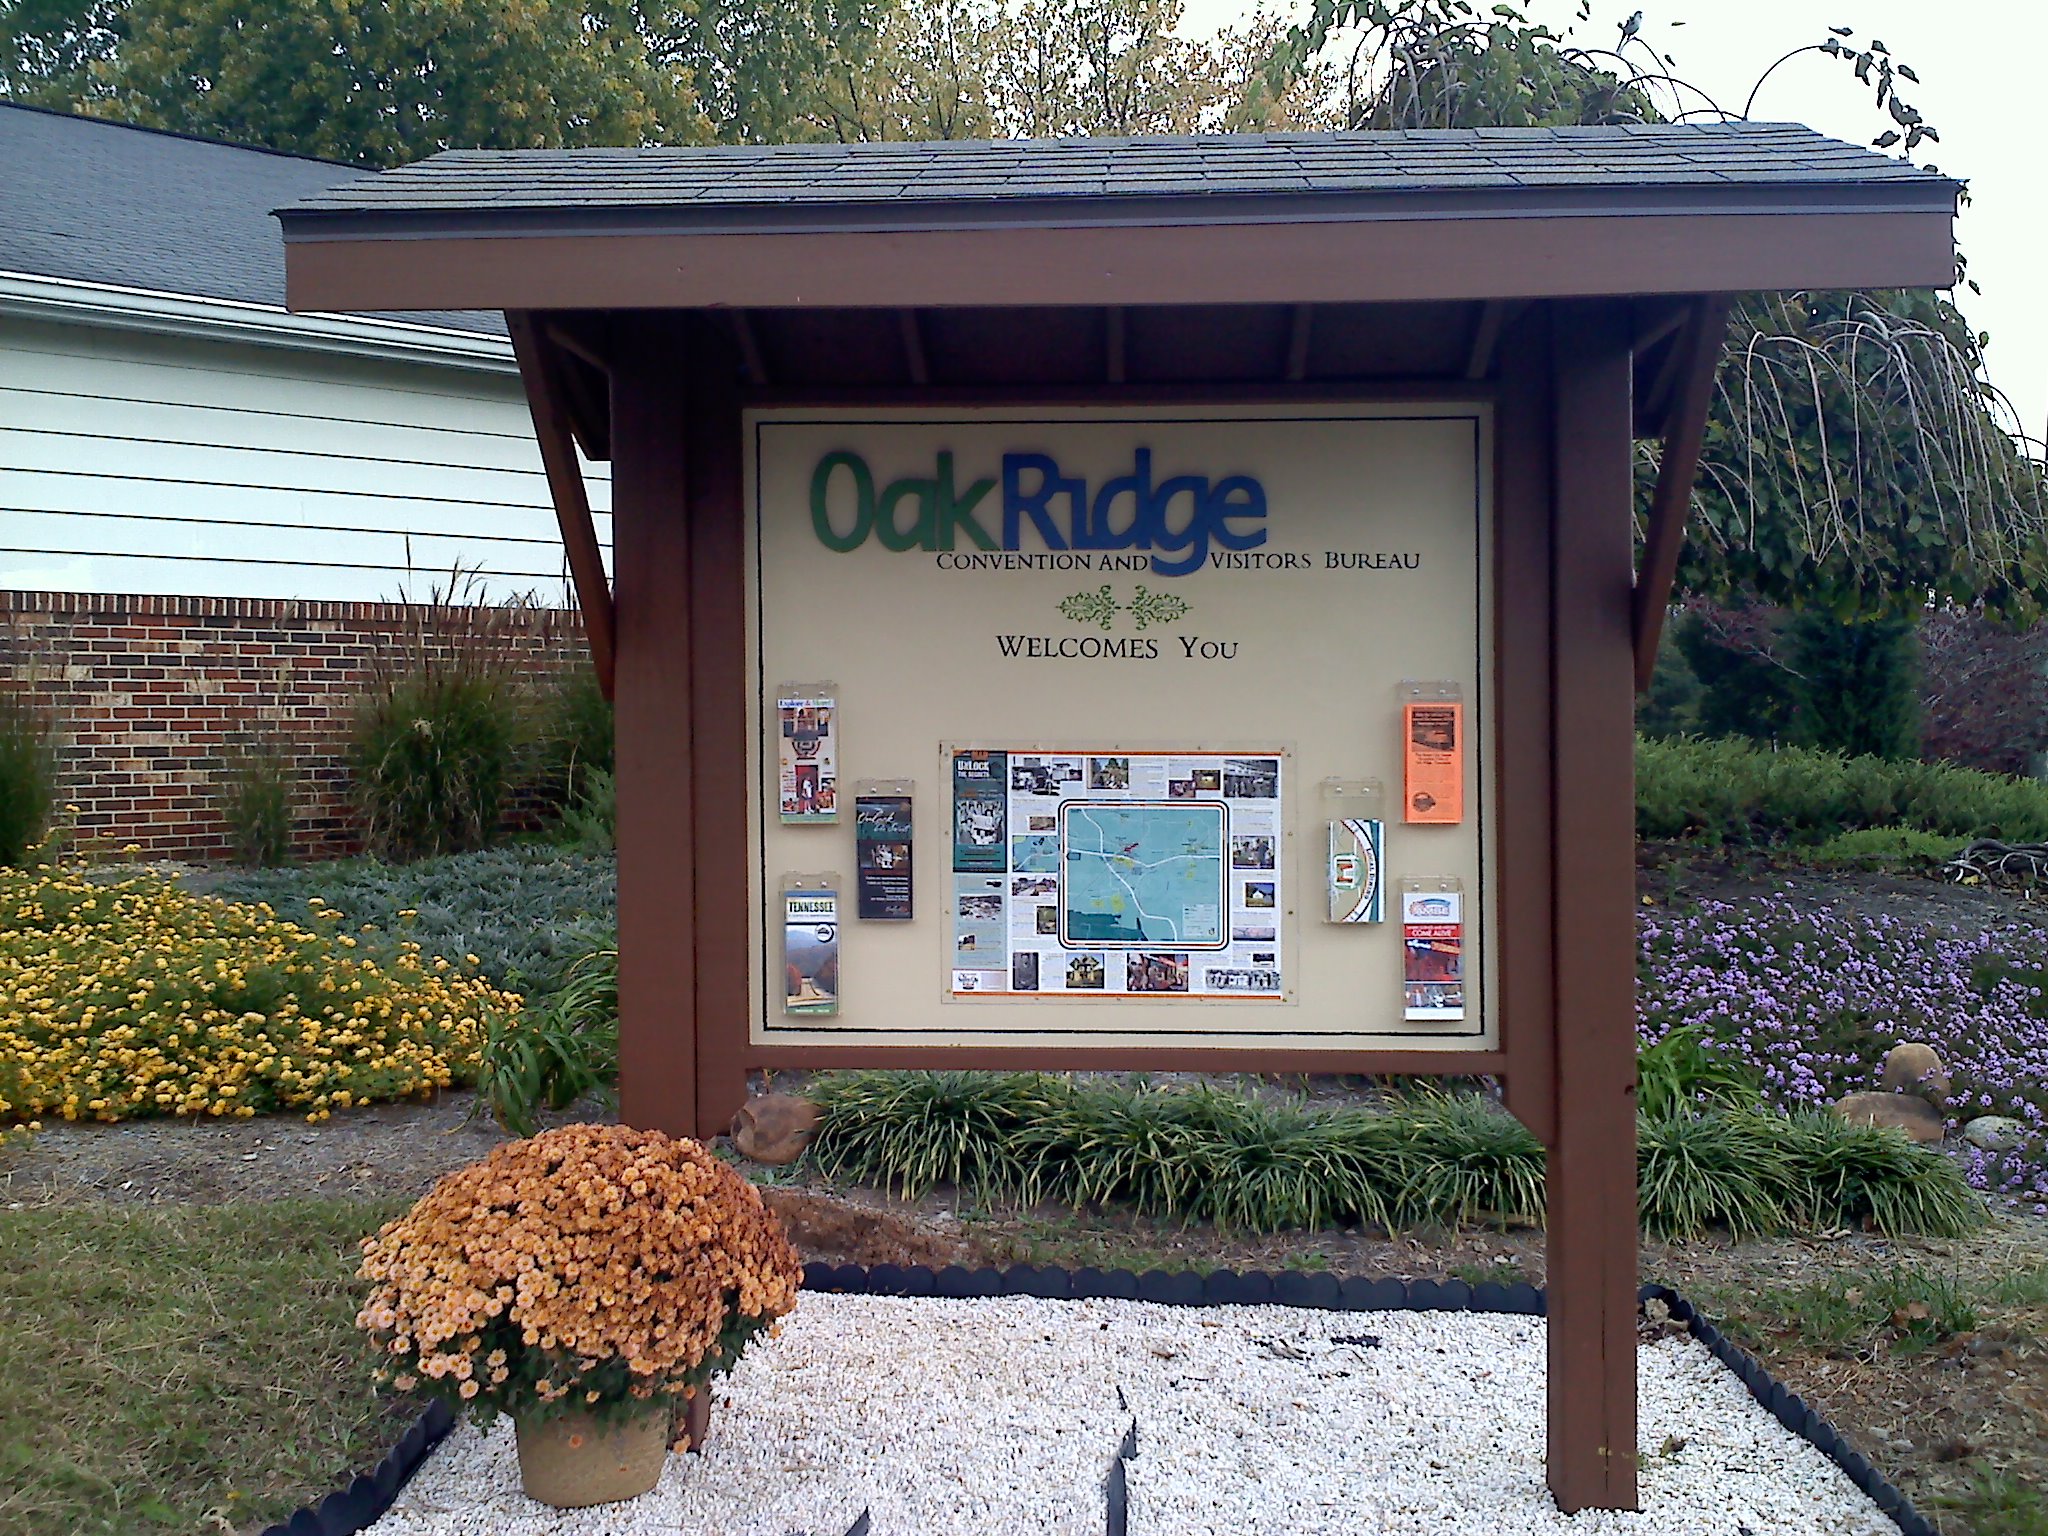 New sign at Oak Ridge Welcome Center – Ellen Smith for Oak Ridge